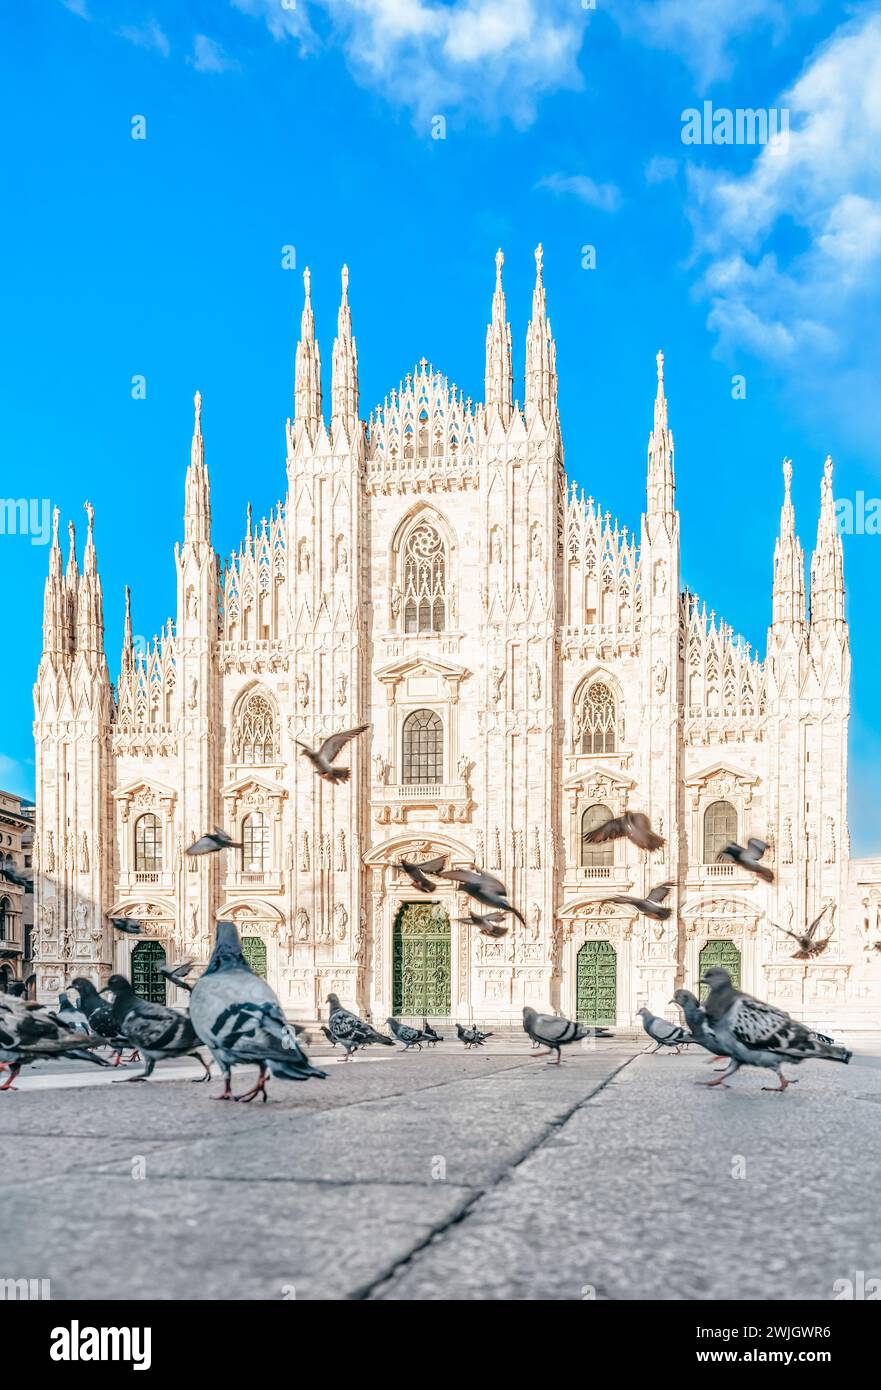 Facciata del Duomo di Milano, Italia - Doves volanti in Piazza del Duomo, Milano, Italia - architettura e monumenti italiani. Foto Stock